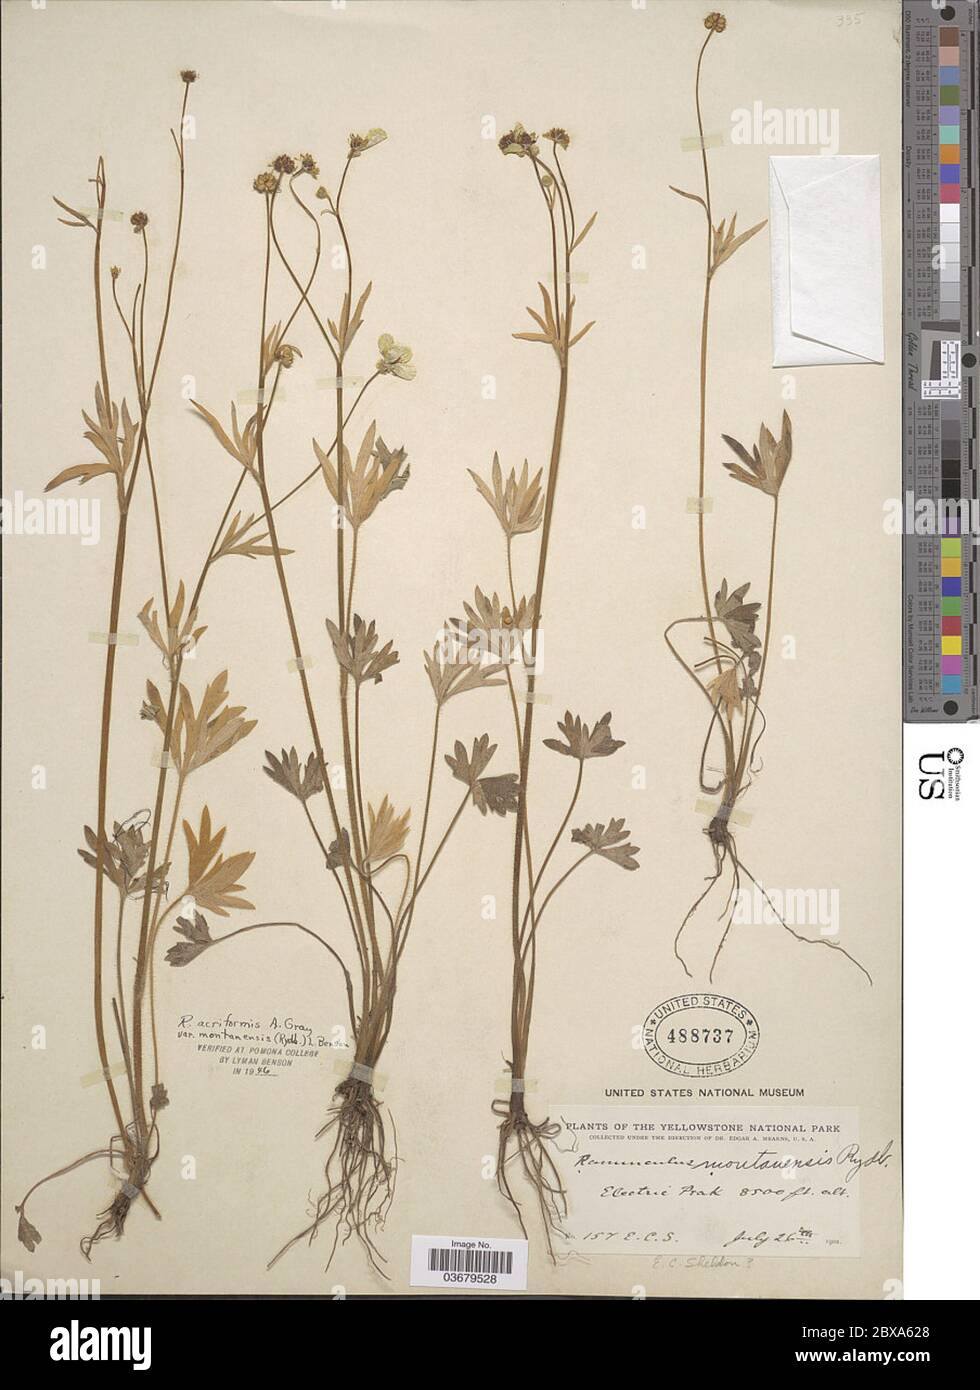 Ranunculus acriformis var montanensis Rydb LD Benson Ranunculus acriformis var montanensis Rydb LD Benson. Stock Photo